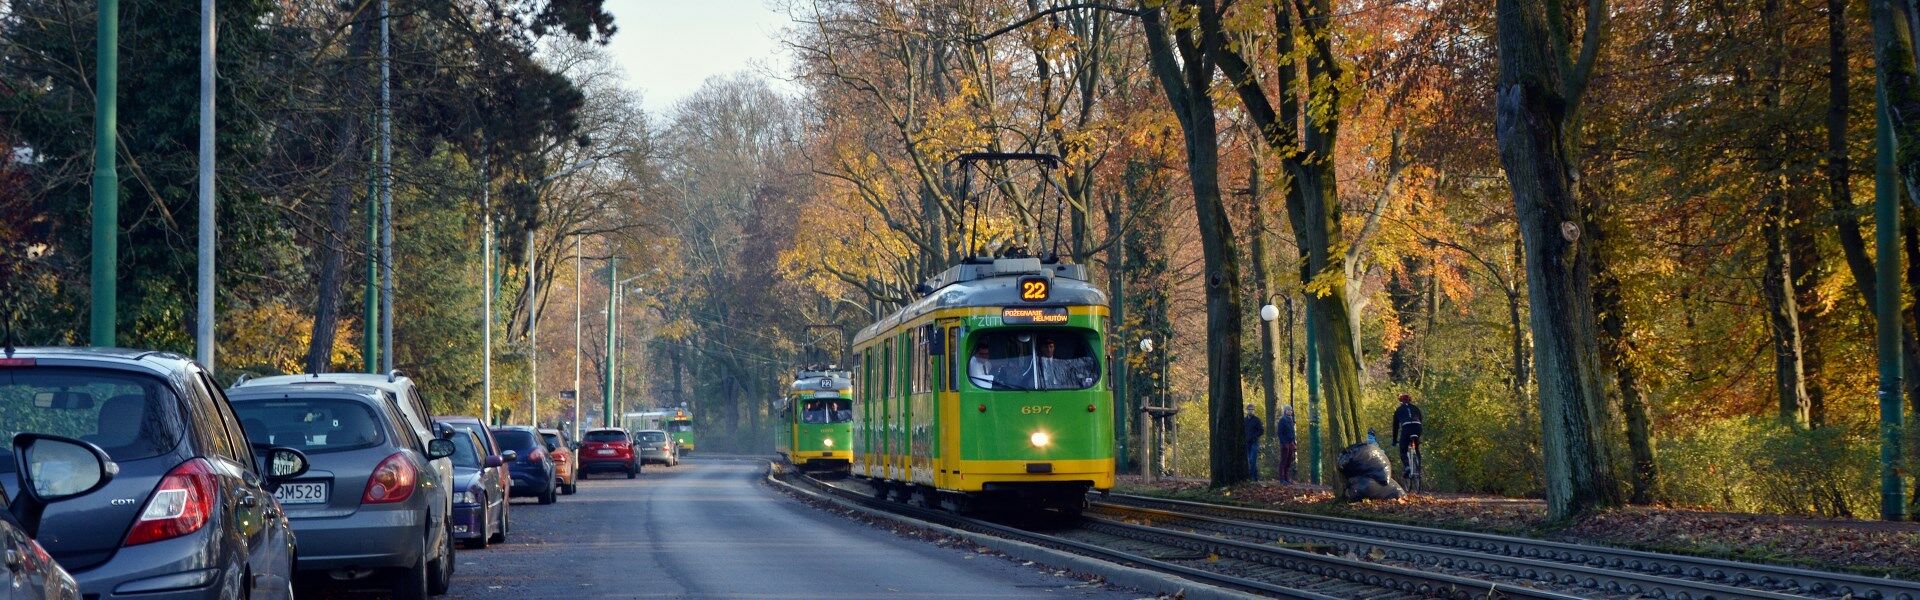 Am 10.11.2019 führt der Wagen 697 den aus neun Düwag GT8 bestehenden Abschiedskorso an. Er markiert das Einsatzende der ehemaligen Düsseldorfer Fahrzeuge in der polnischen Stadt Poznań (Posen) nach 22 Jahren. (Foto: Łukasz Łyszczak)